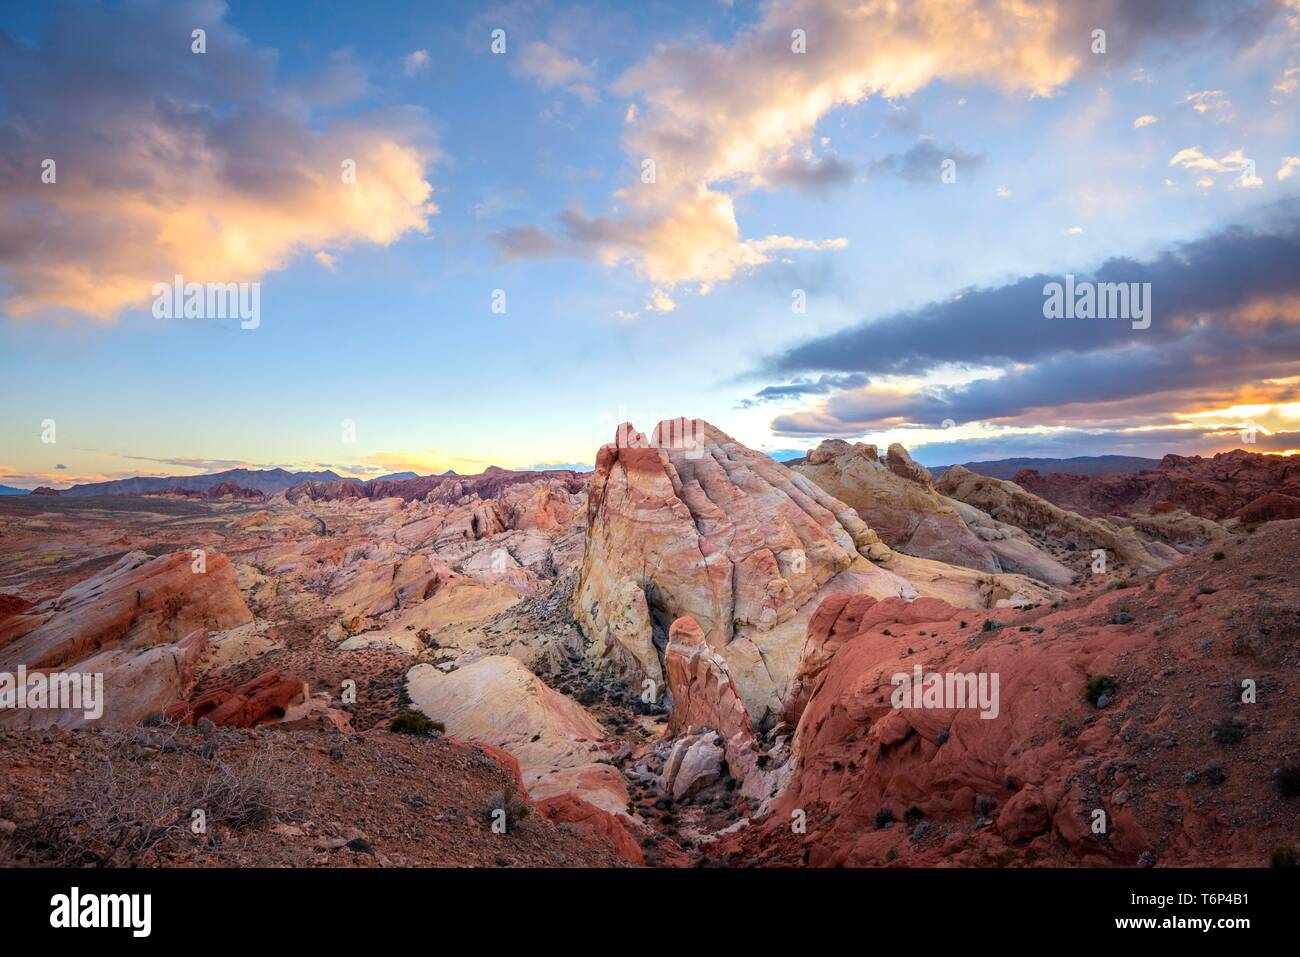 Bunt, rot orange Felsformationen bei Sonnenuntergang mit farbigen Wolken, weißen Kuppel, Sandsteinfelsen, Valley of Fire State Park, Mojave Desert, Nevada, USA Stockfoto